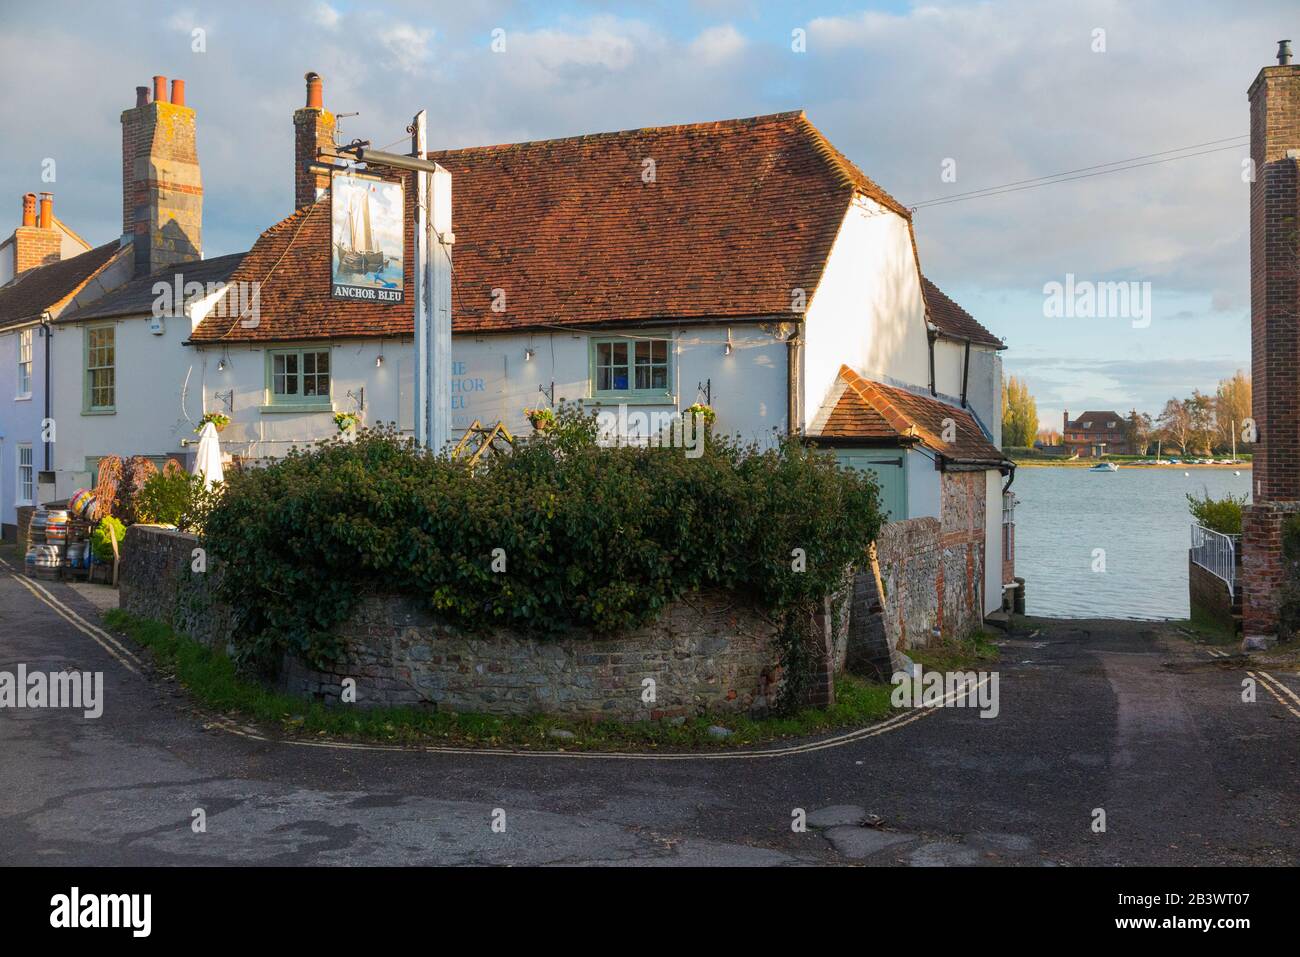 Visto desde el exterior, el Anchor Bleu – Inglés; el Blue Anchor – pub / casa pública con signo en la calle alta, Bosham, Chichester PO18 8LS. Sussex Occidental. REINO UNIDO (114) Foto de stock